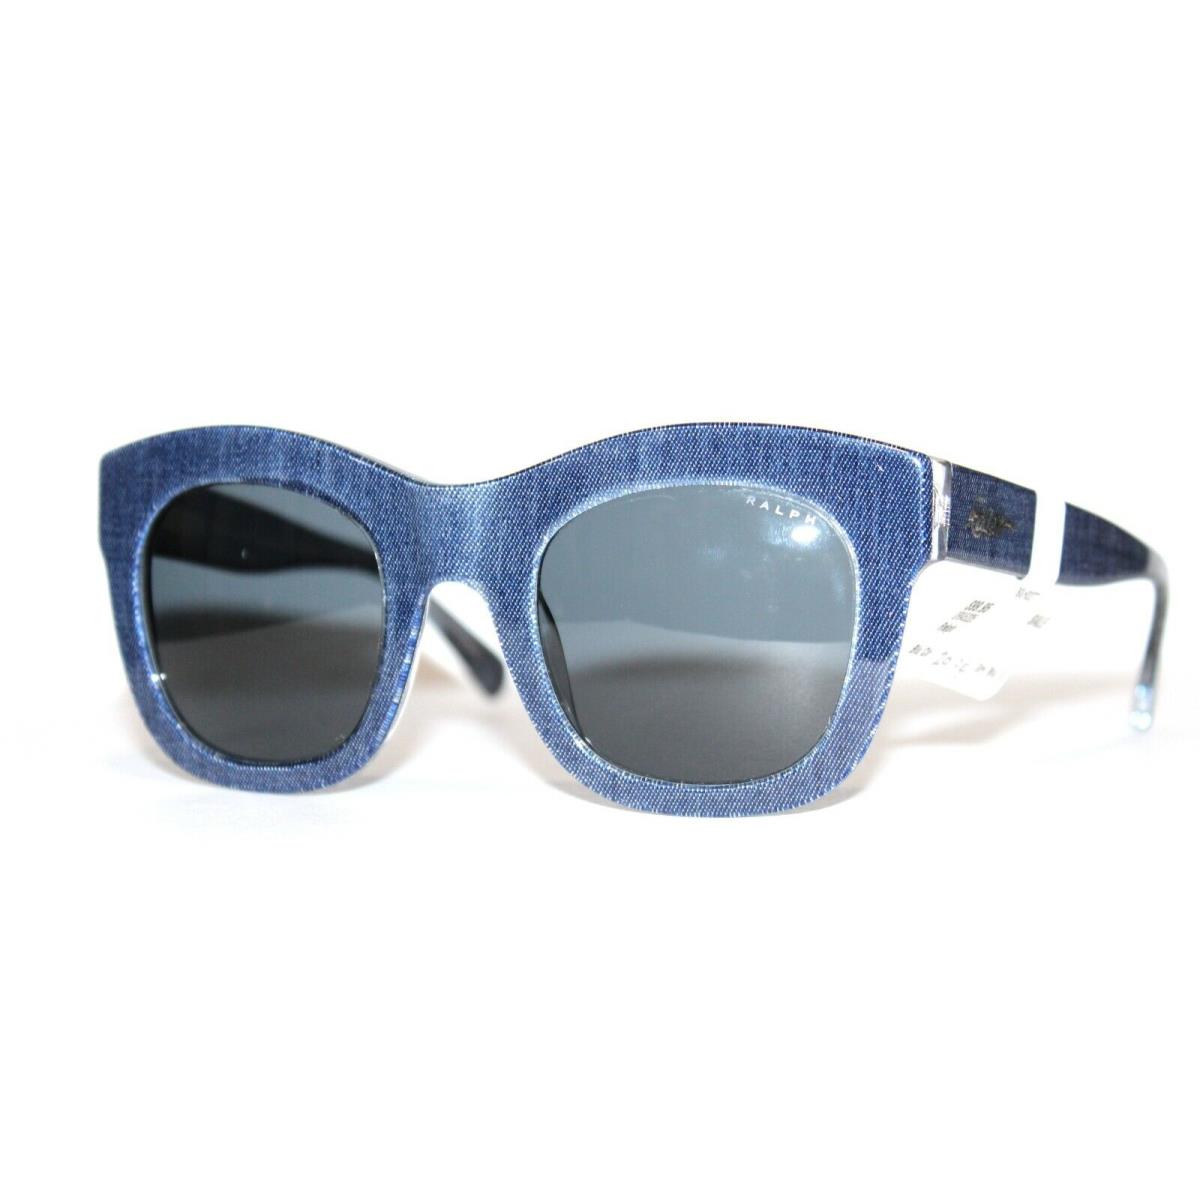 Ralph Lauren sunglasses  - Blue Frame, Gray Lens 1